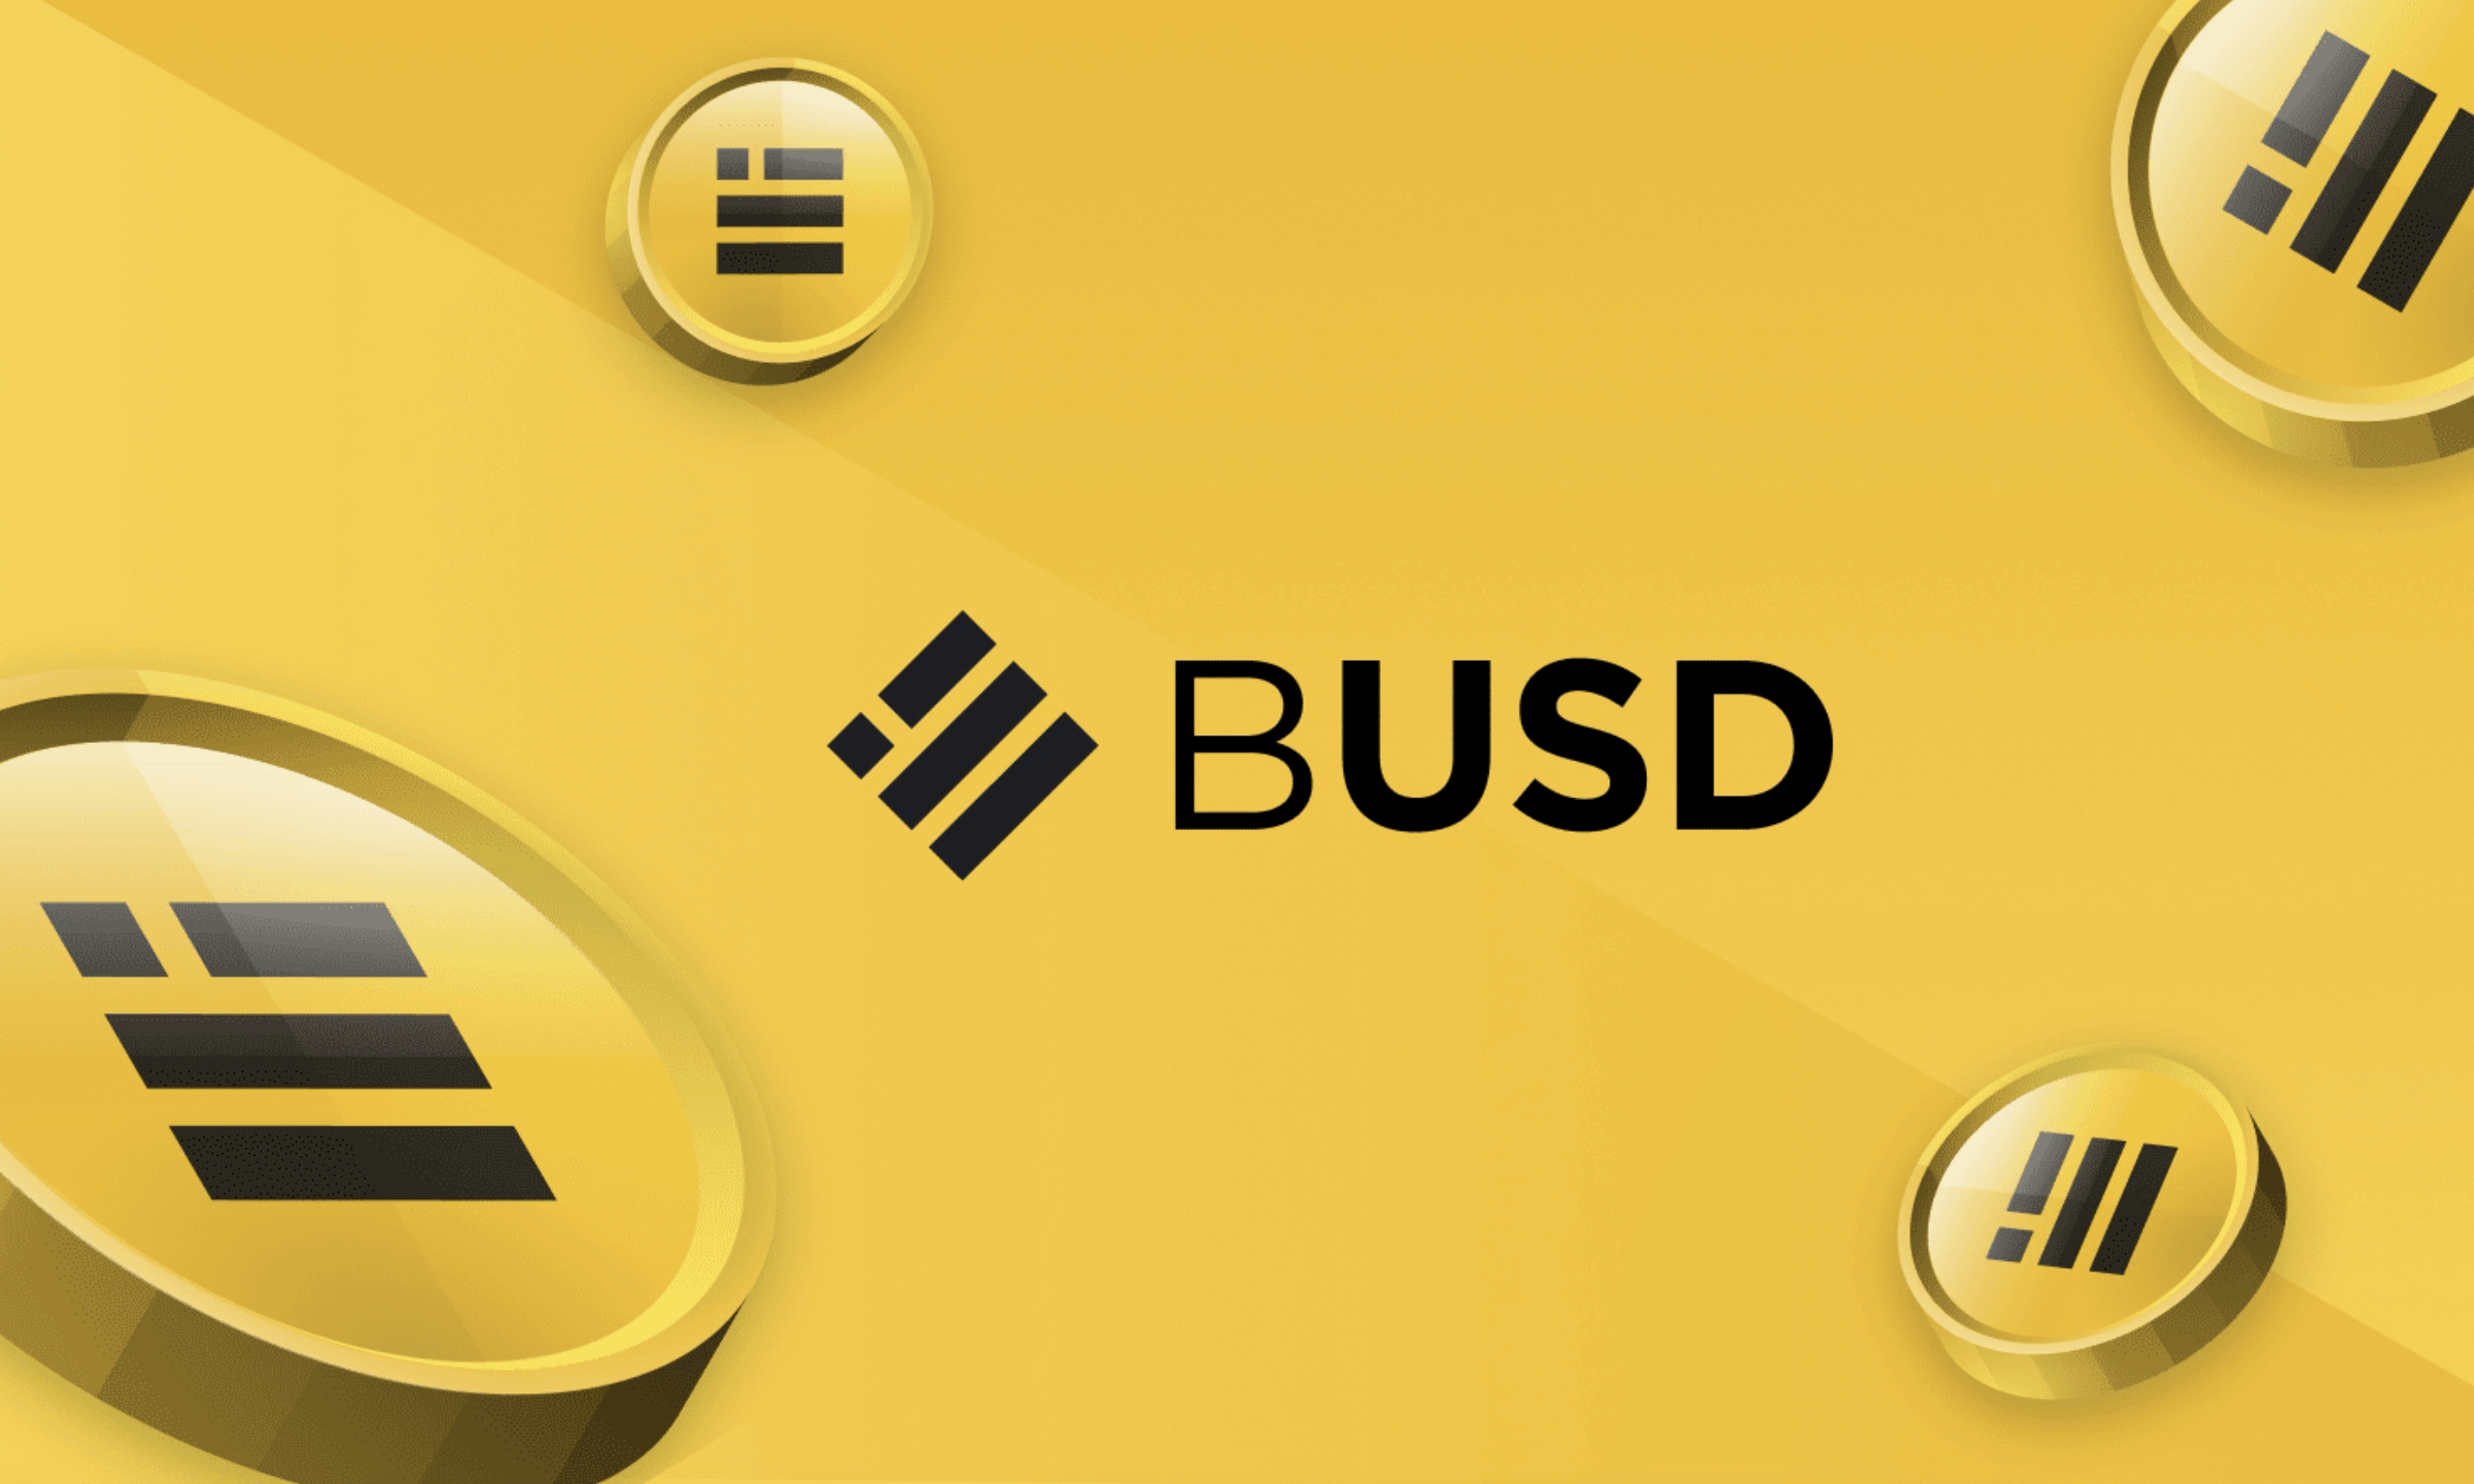 What is BUSD - Binance USD